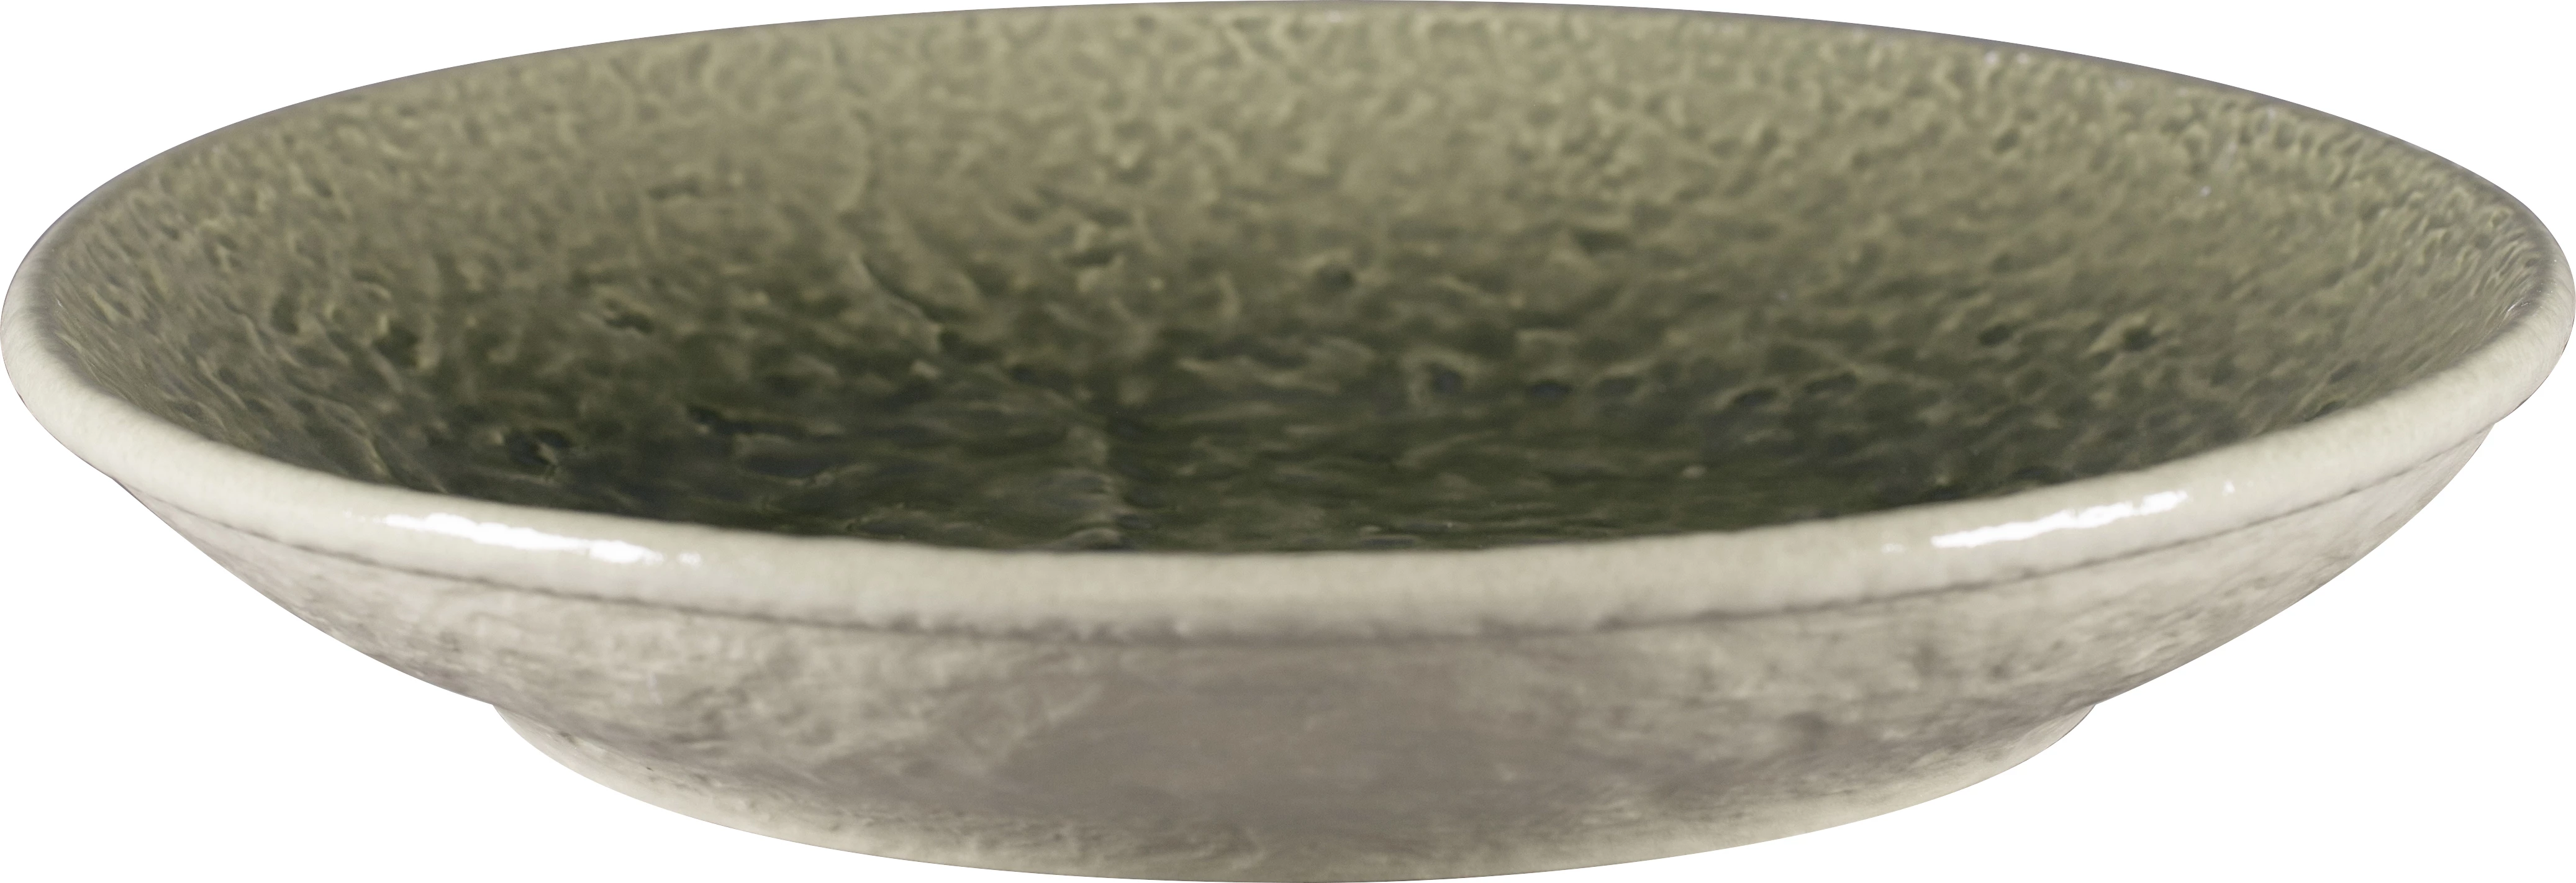 RAK Krush tallerken uden fane, dyb, oliven, ø26,1 cm